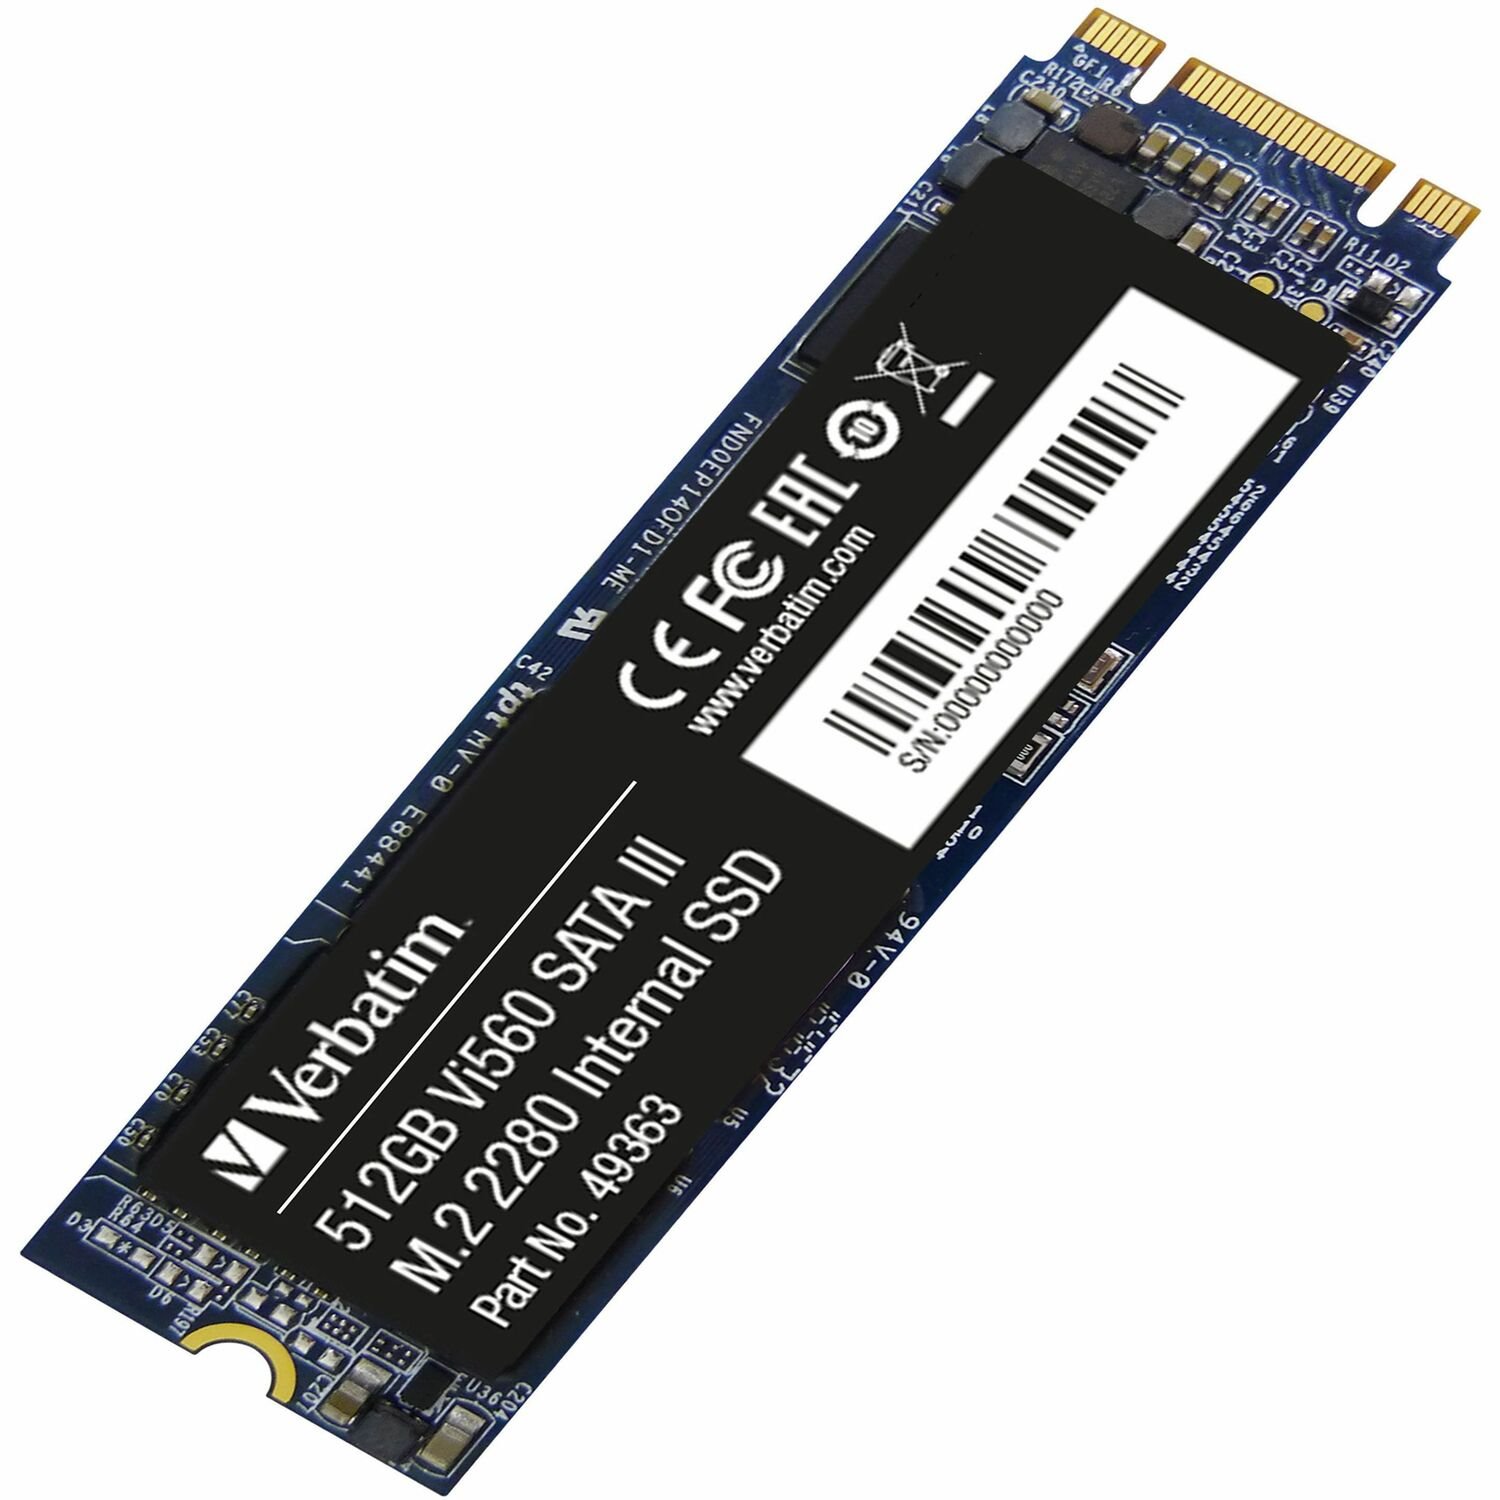 512GB Vi560 SATA III M.2 2280 Internal SSD